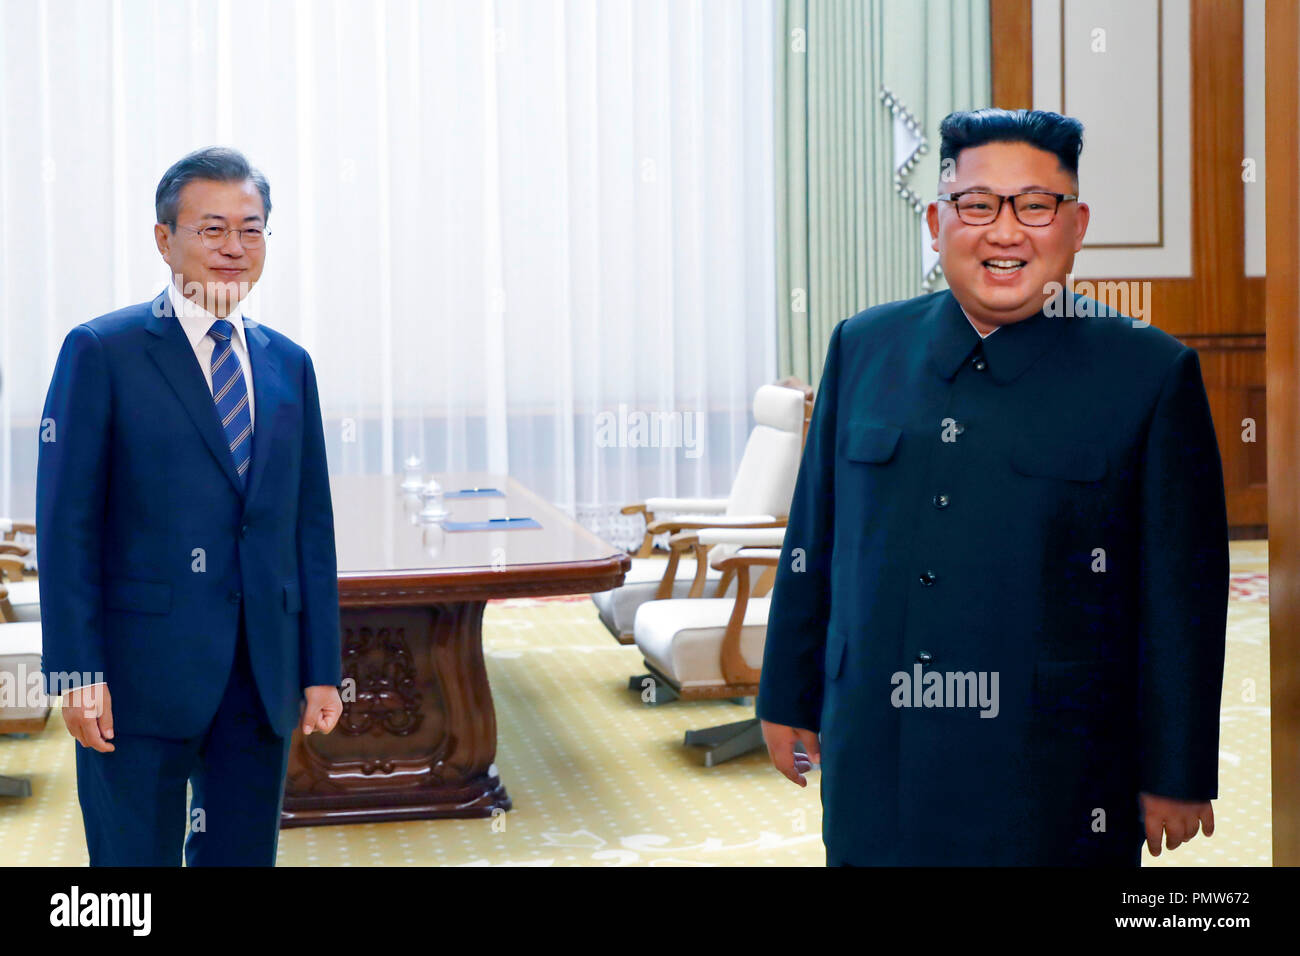 Innerkoreanischen Gipfeltreffen, 19.09.2018: die nordkoreanischen Führer Kim Jong-Un und südkoreanischen Präsidenten Mond Jae-In ankommen ein Gipfel, bei dem Paekhwawon State Guest House in Pyongyang, Nordkorea zu halten. Nordkoreanischen Führer Kim vereinbart, dauerhaft große Rakete Triebwerksprüfstände und eine Startrampe in der Nähe der Grenze zu China demontieren. Die beiden koreanischen Staaten vereinbarten grenzüberschreitenden Austausch und arbeiten zusammen, um für eine ausgewogene wirtschaftliche Entwicklung auf der Koreanischen Halbinsel zu intensivieren und sich für ein gemeinsames Projekt der Eisenbahnen und Straßen, die über ihre Landesgrenzen hinaus innerhalb dieses Jahres zu verbinden, als Teil der Bemühungen, t zu brechen Stockfoto